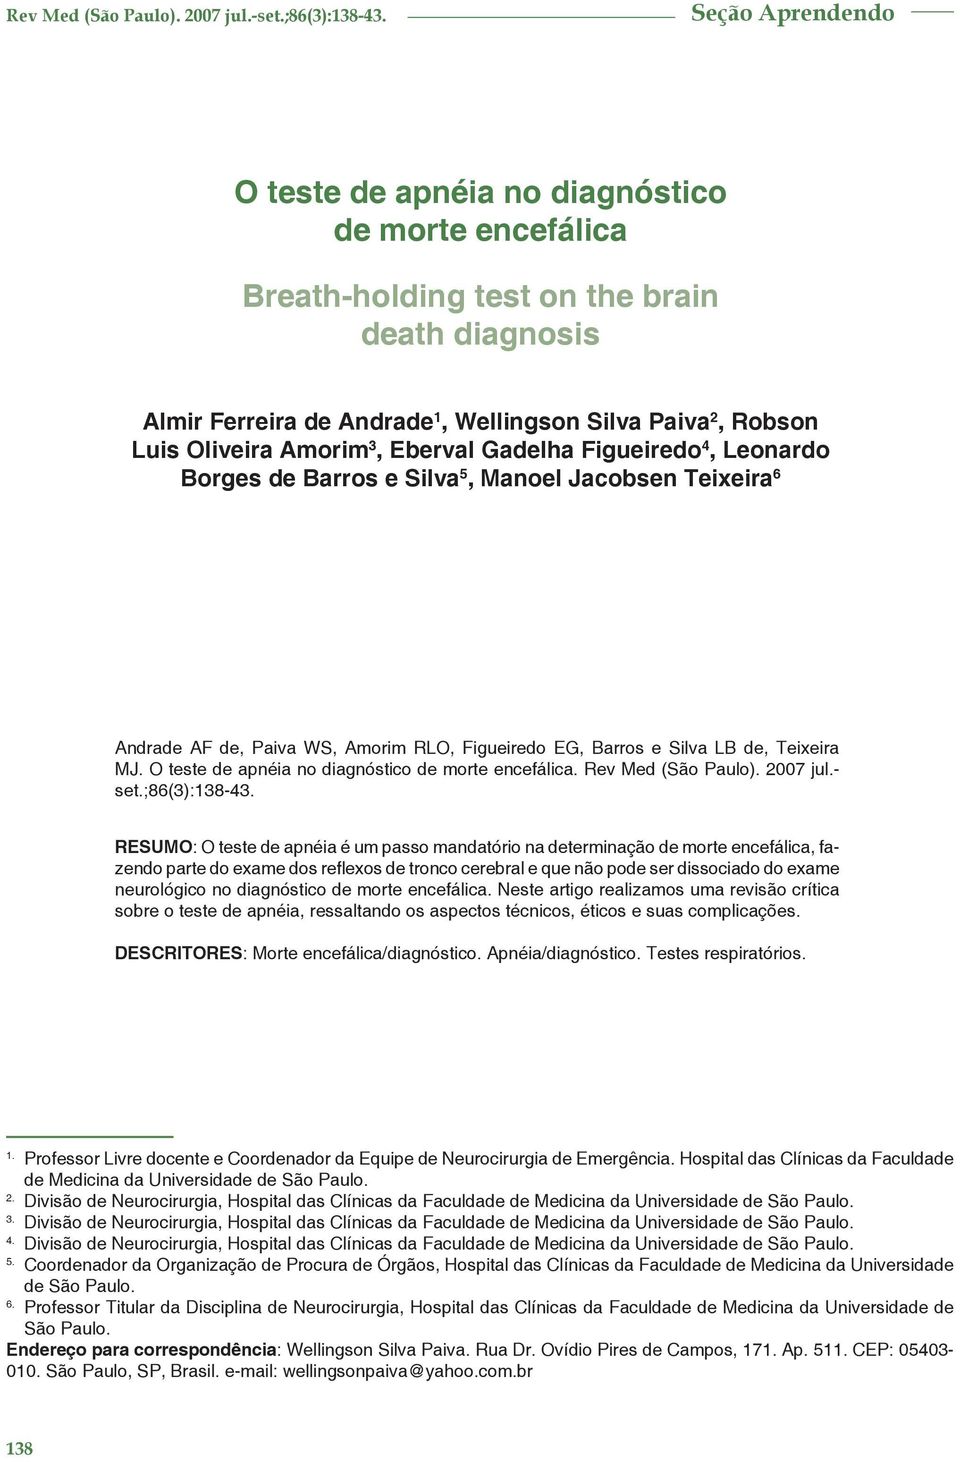 O teste de apnéia no diagnóstico de morte encefálica. Rev Med (São Paulo). 2007 jul.- set.;86(3):138-43.